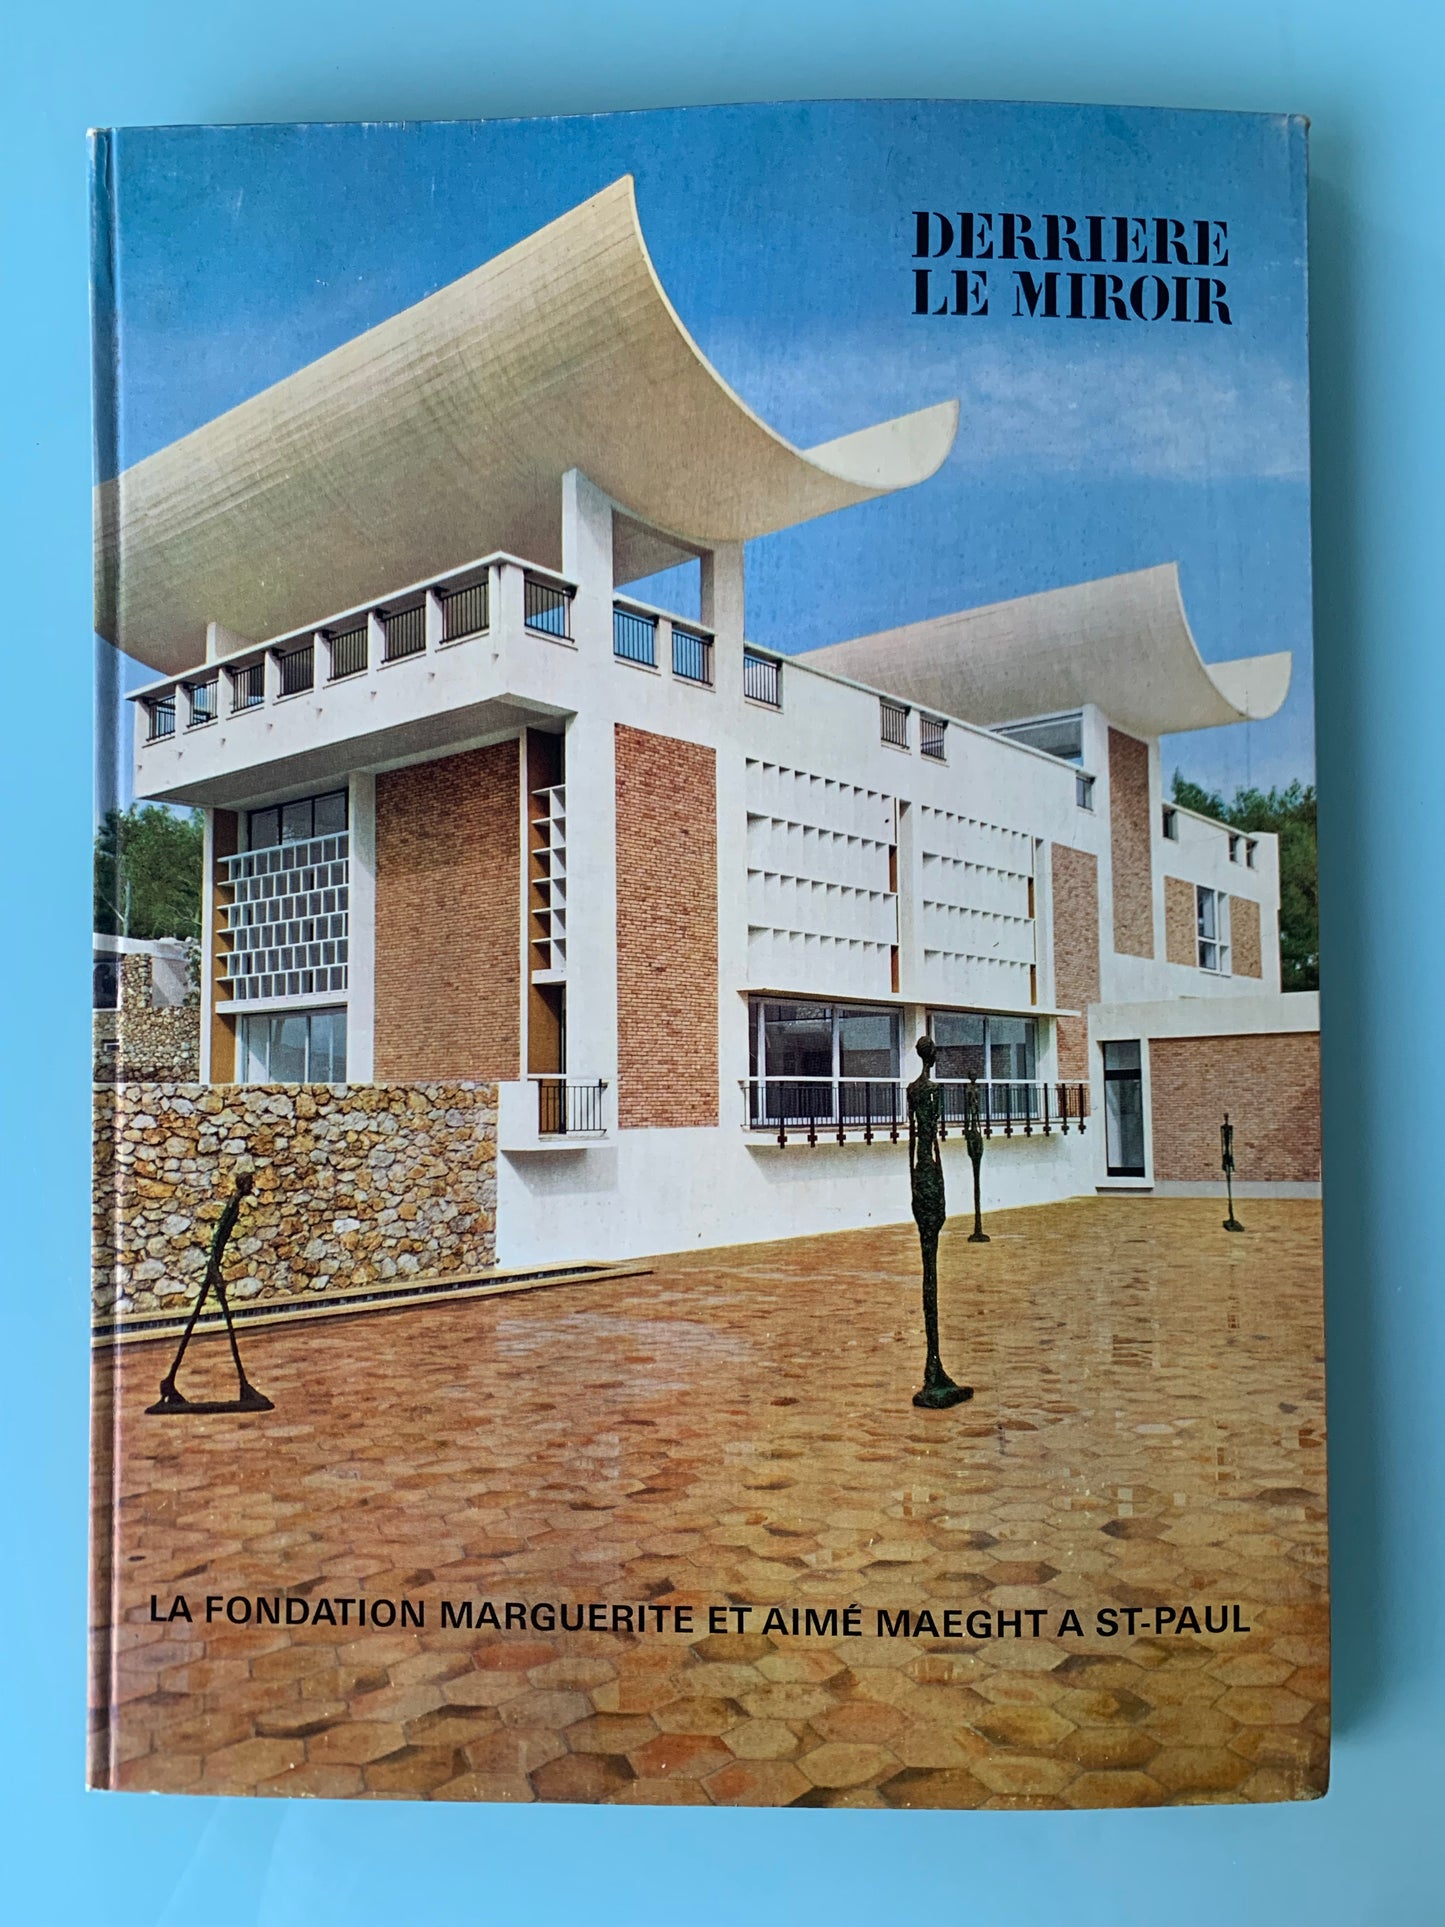 Derriere Le Miroir. "Le Fondation Marguerite et Aimé Maeght a St. Paul”, 1964